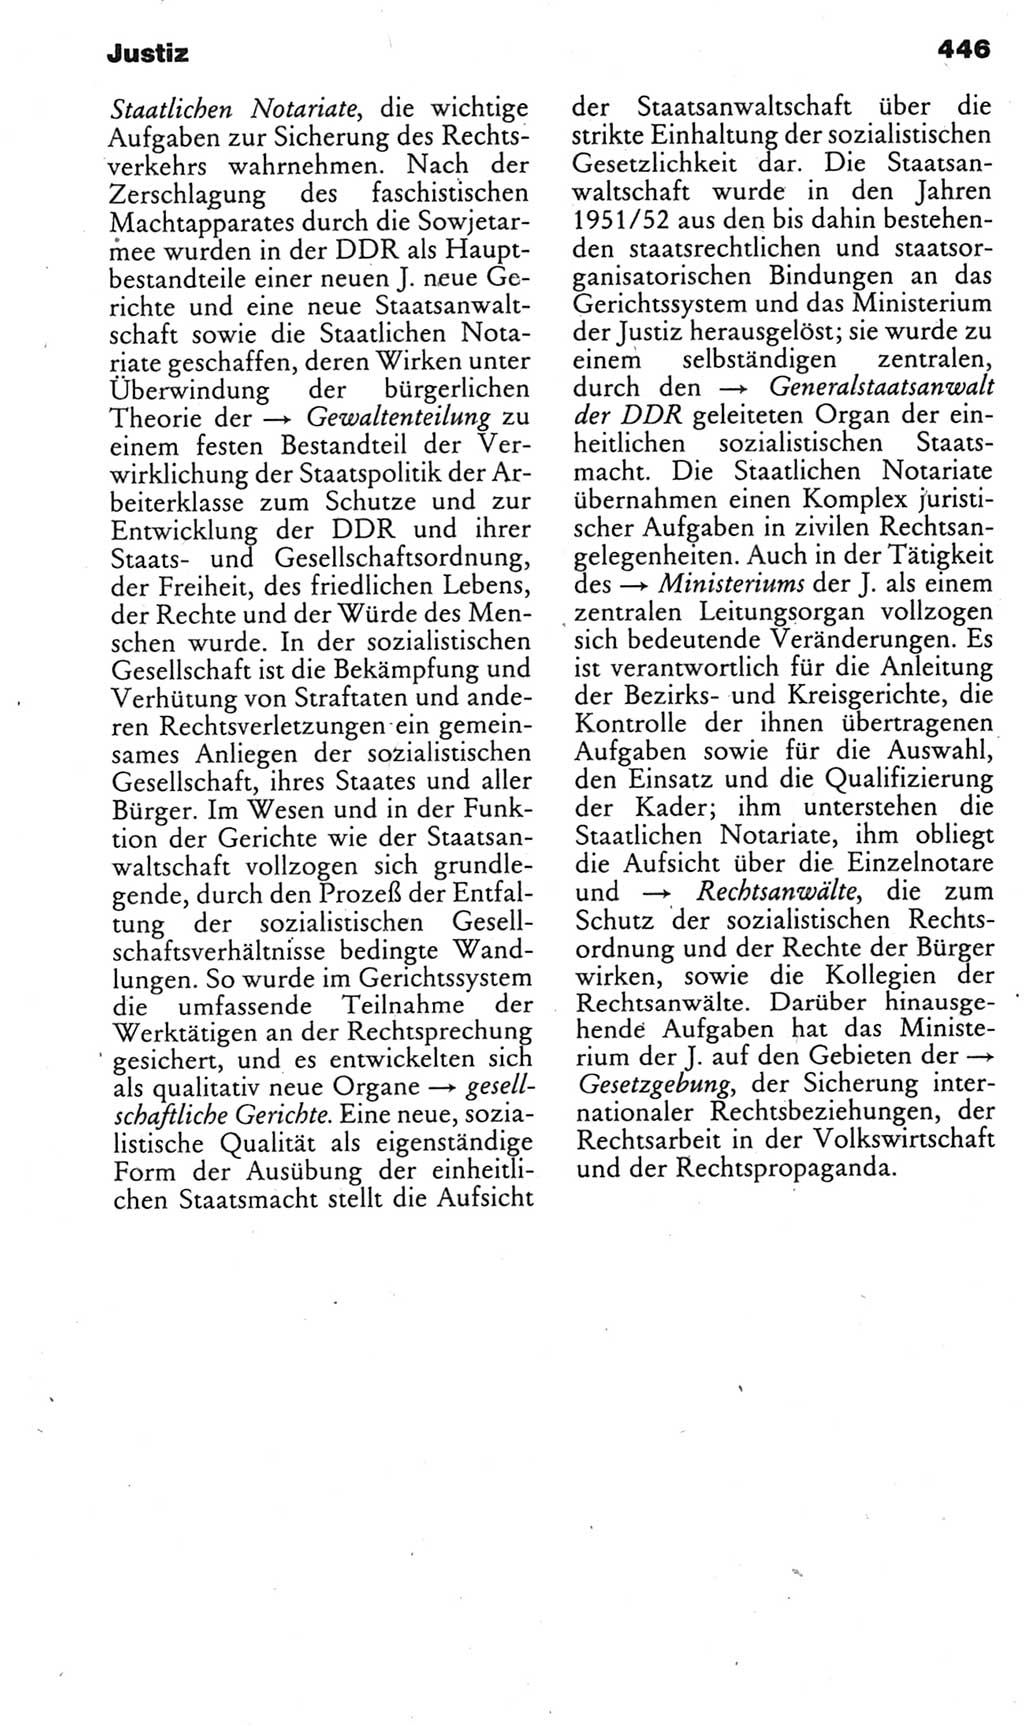 Kleines politisches Wörterbuch [Deutsche Demokratische Republik (DDR)] 1985, Seite 446 (Kl. pol. Wb. DDR 1985, S. 446)